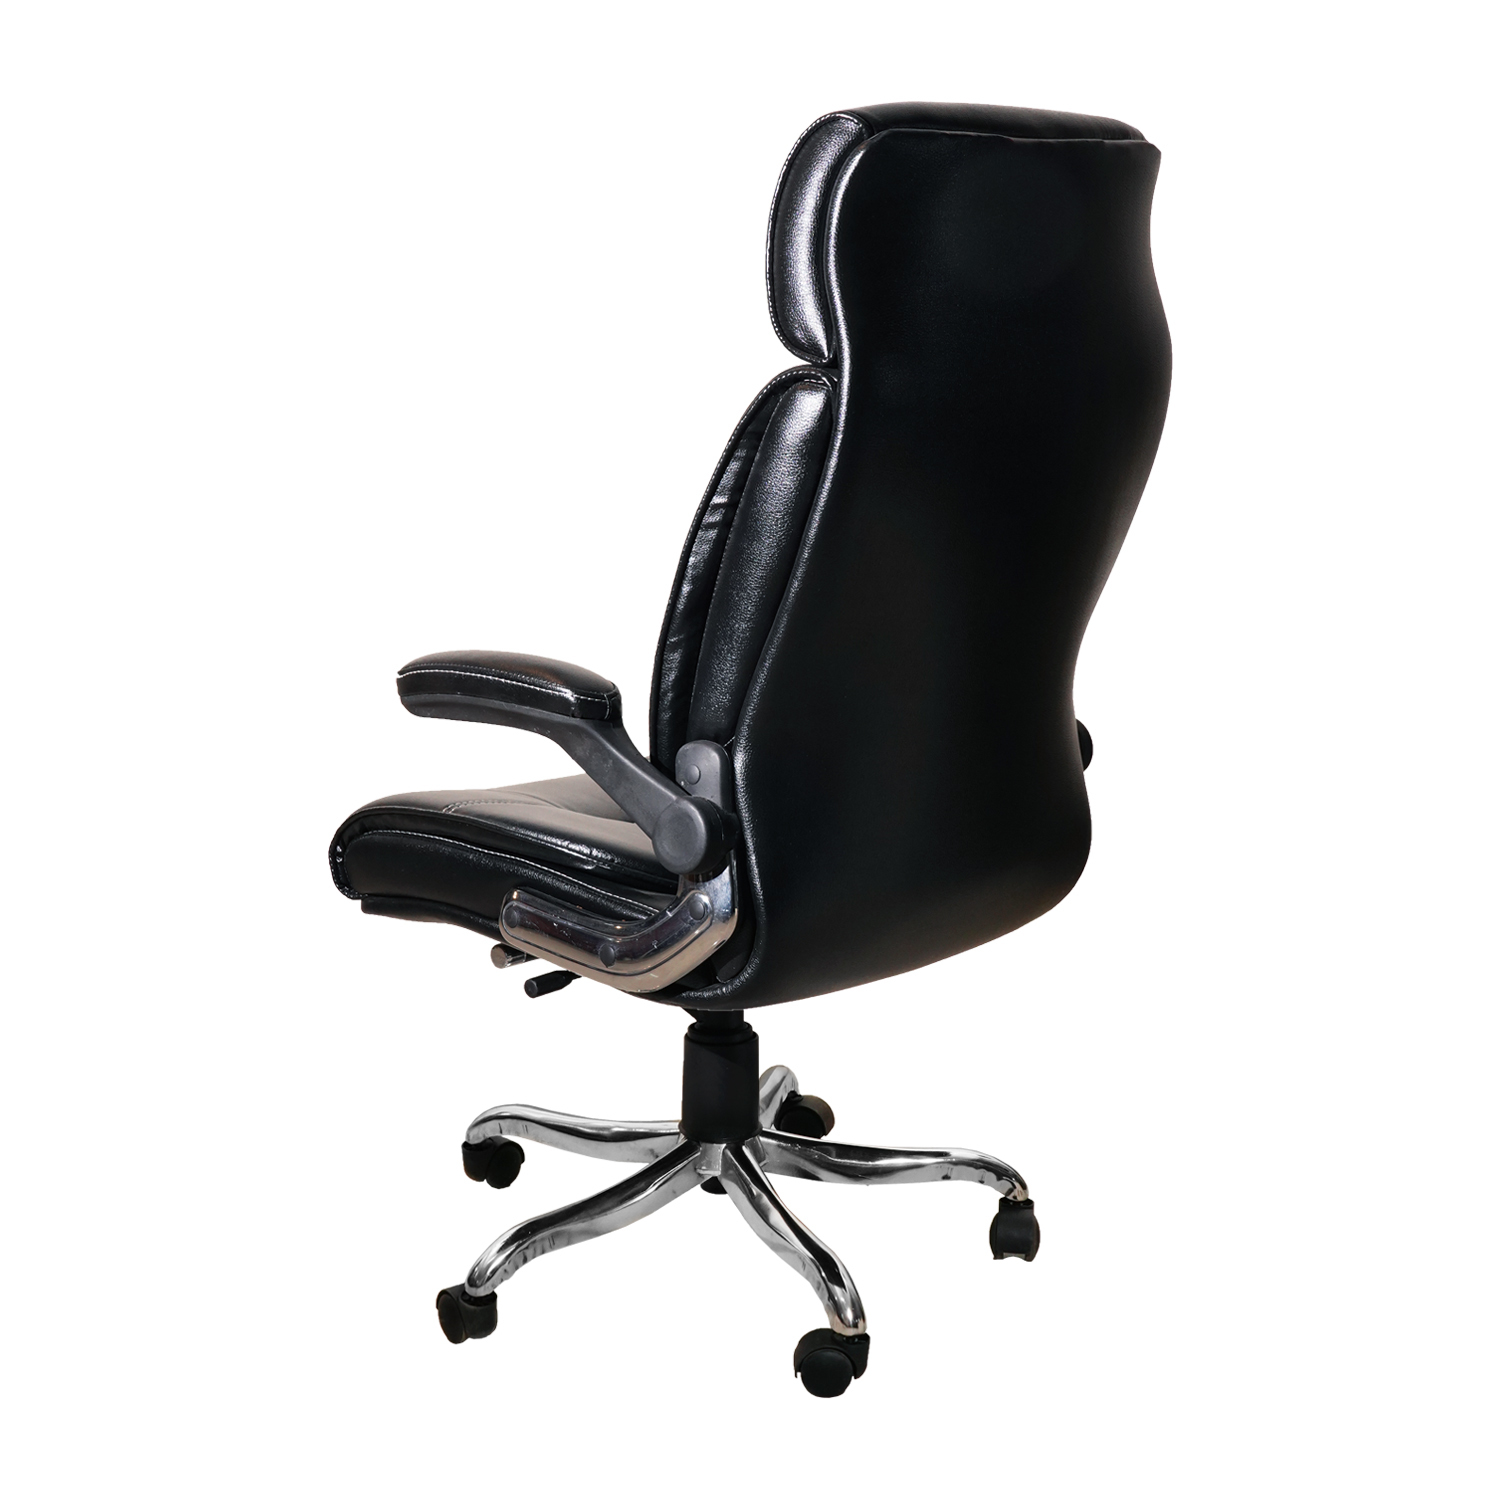 Amaltas® Luxury Office Chair | High Back Executive Chair